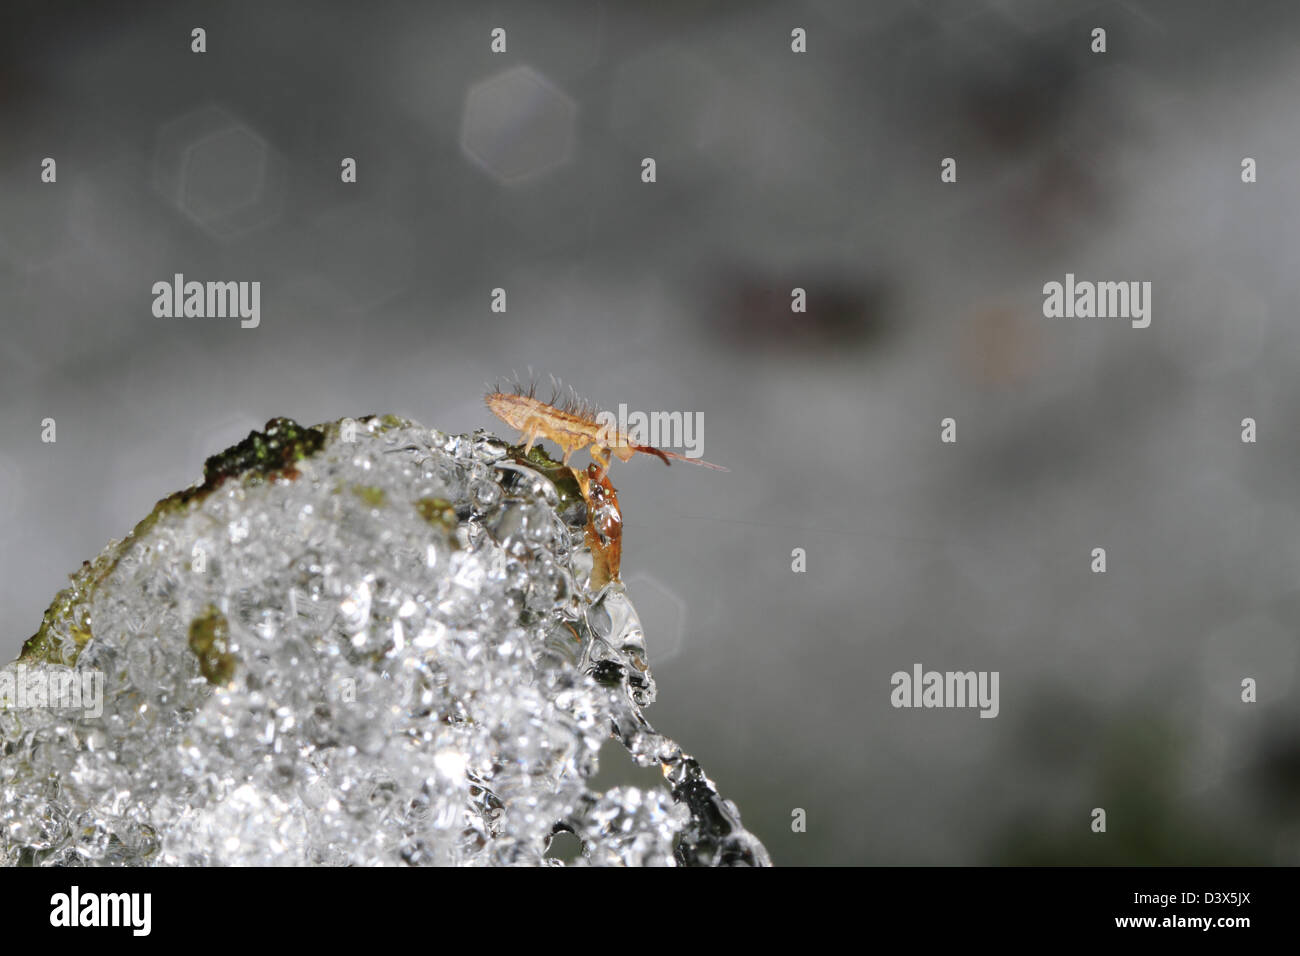 Même en hiver les petits invertébrés sont actifs. Ici un springtail (Collembola) repose sur la neige fondante. Banque D'Images